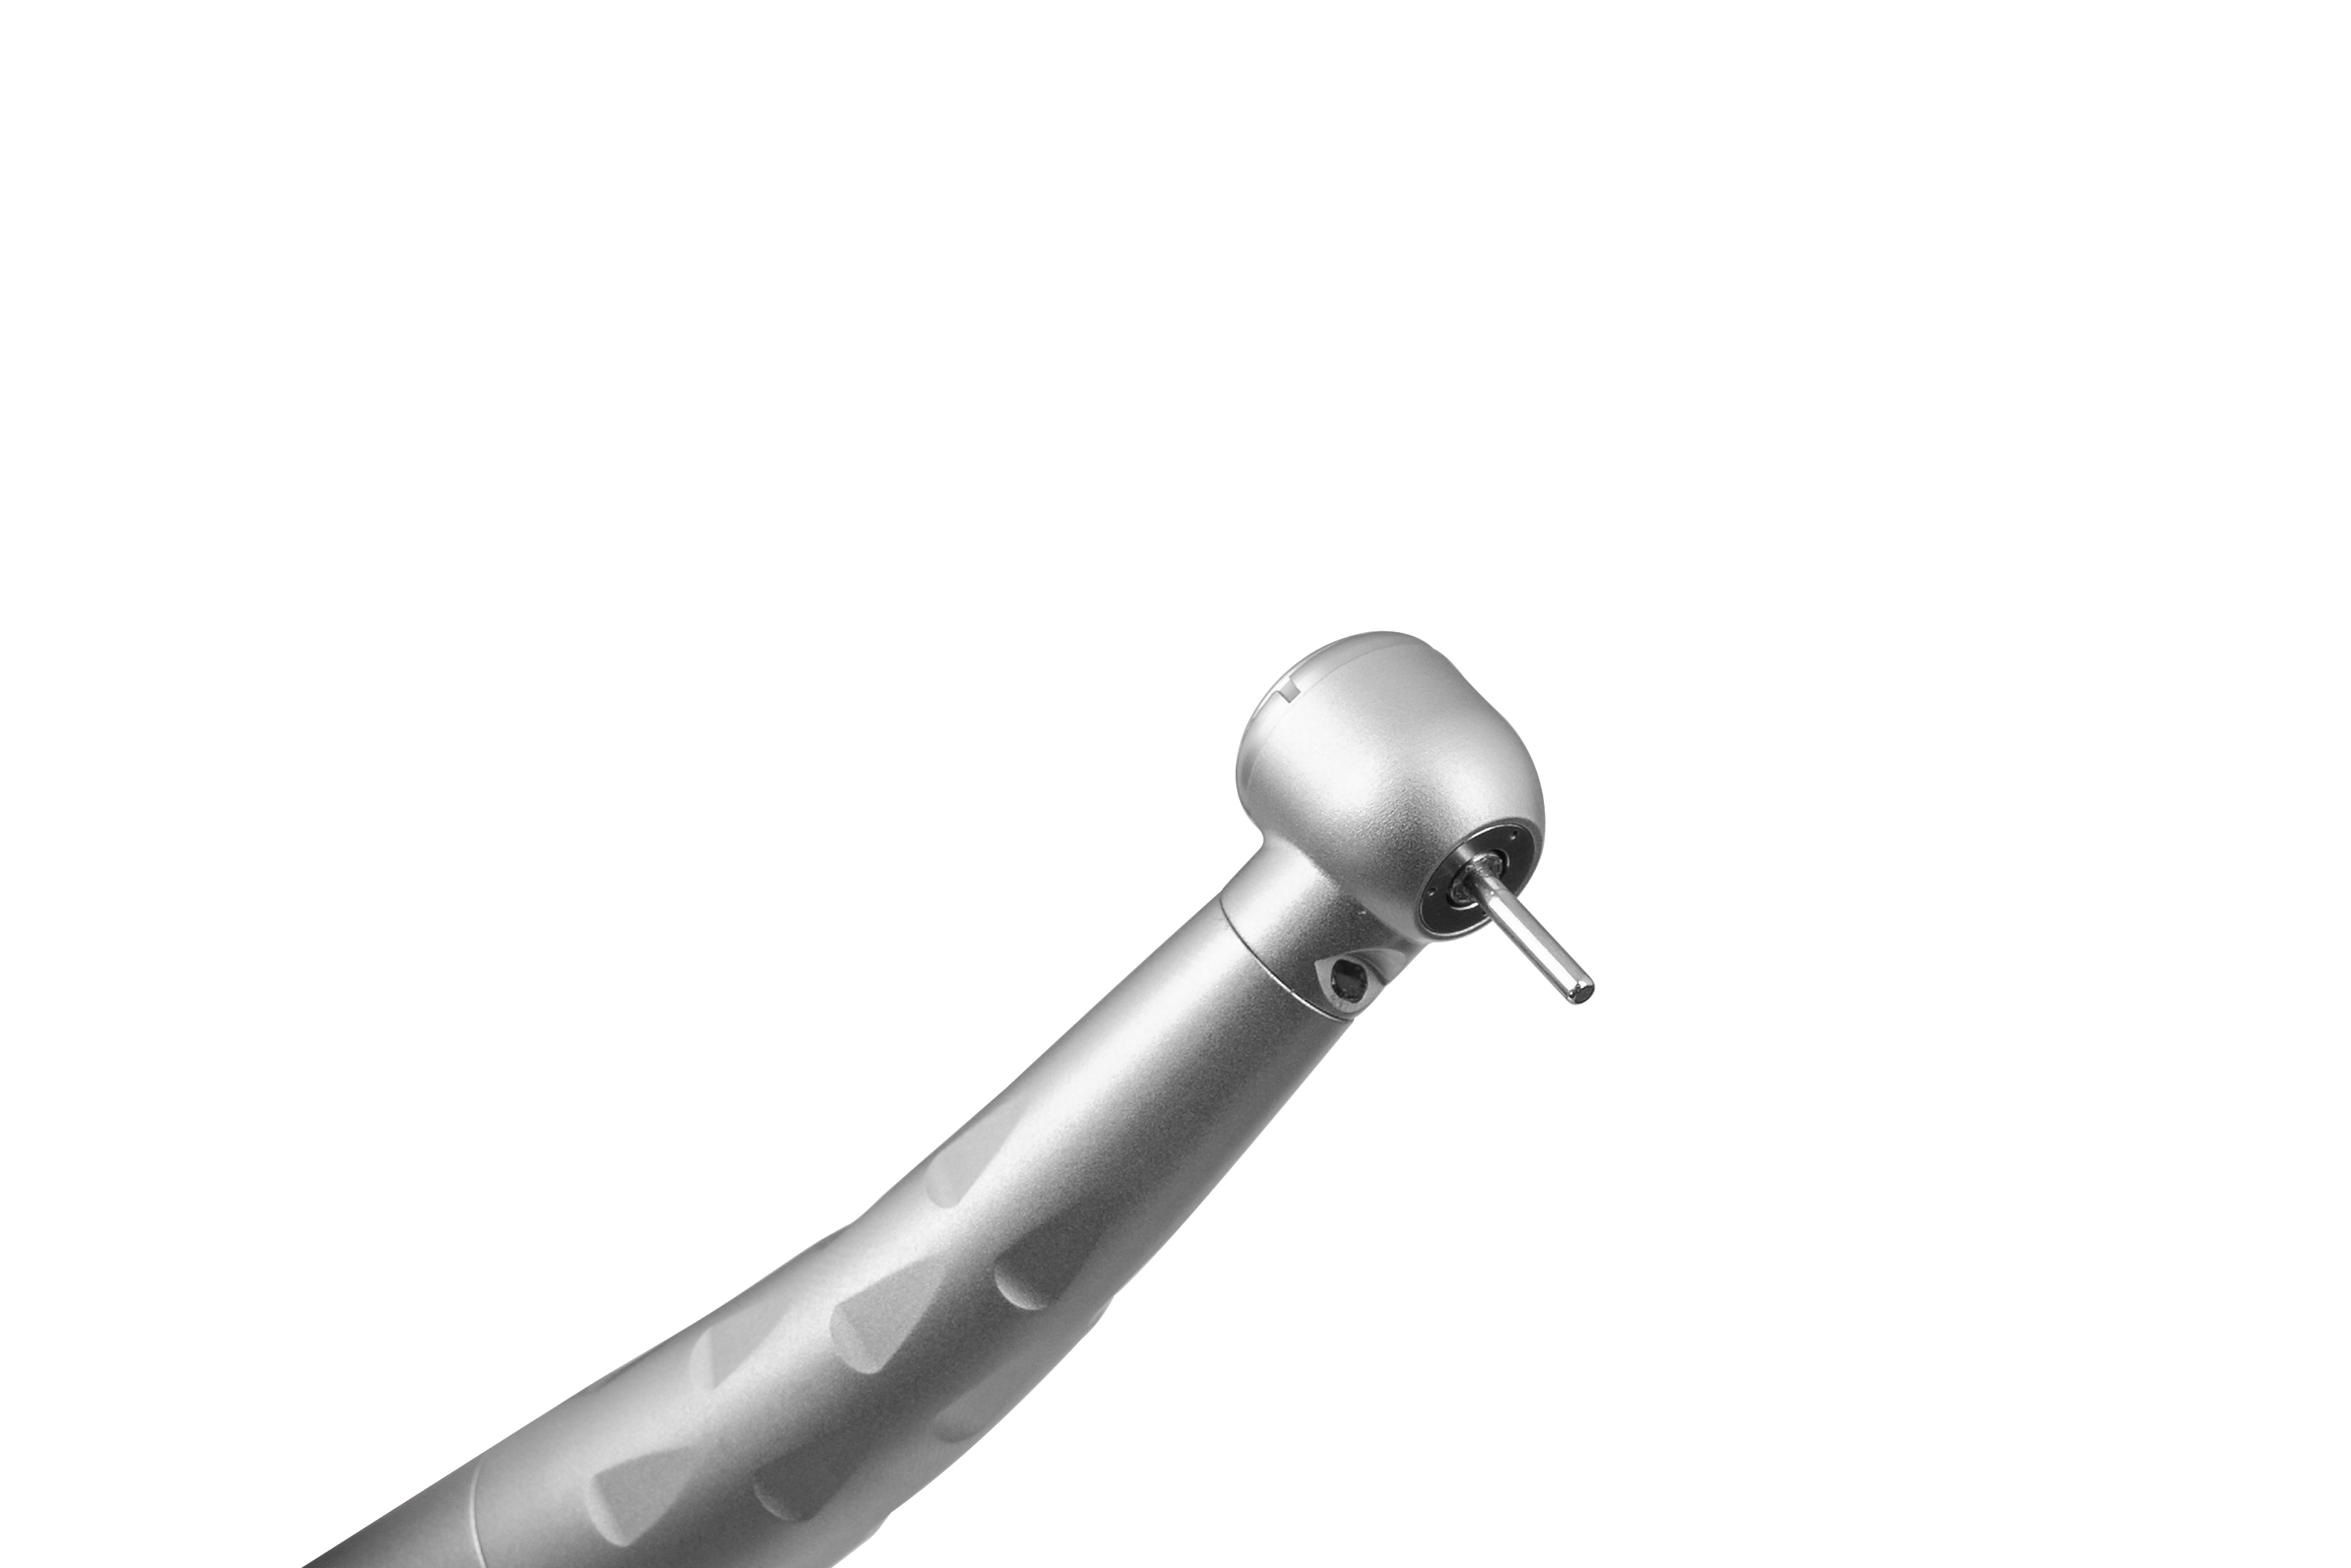 Наконечник стоматологический турбинный ЭУРМЕД ТС-001 с подсветкой и быстросъемным переходником. Фото N9